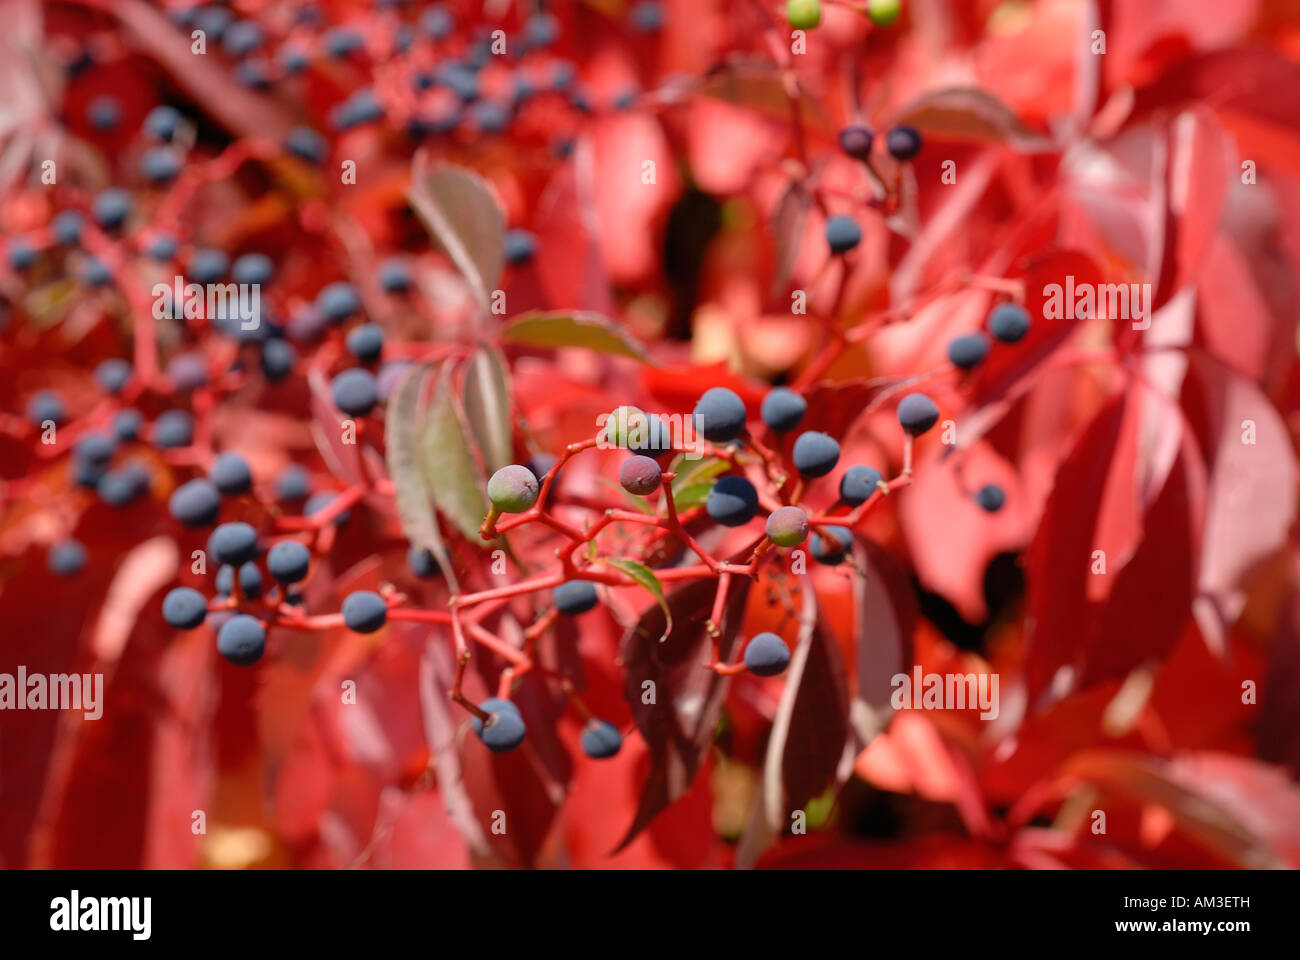 Virginia creeper (Parthenocissus quinquefolia) Stock Photo